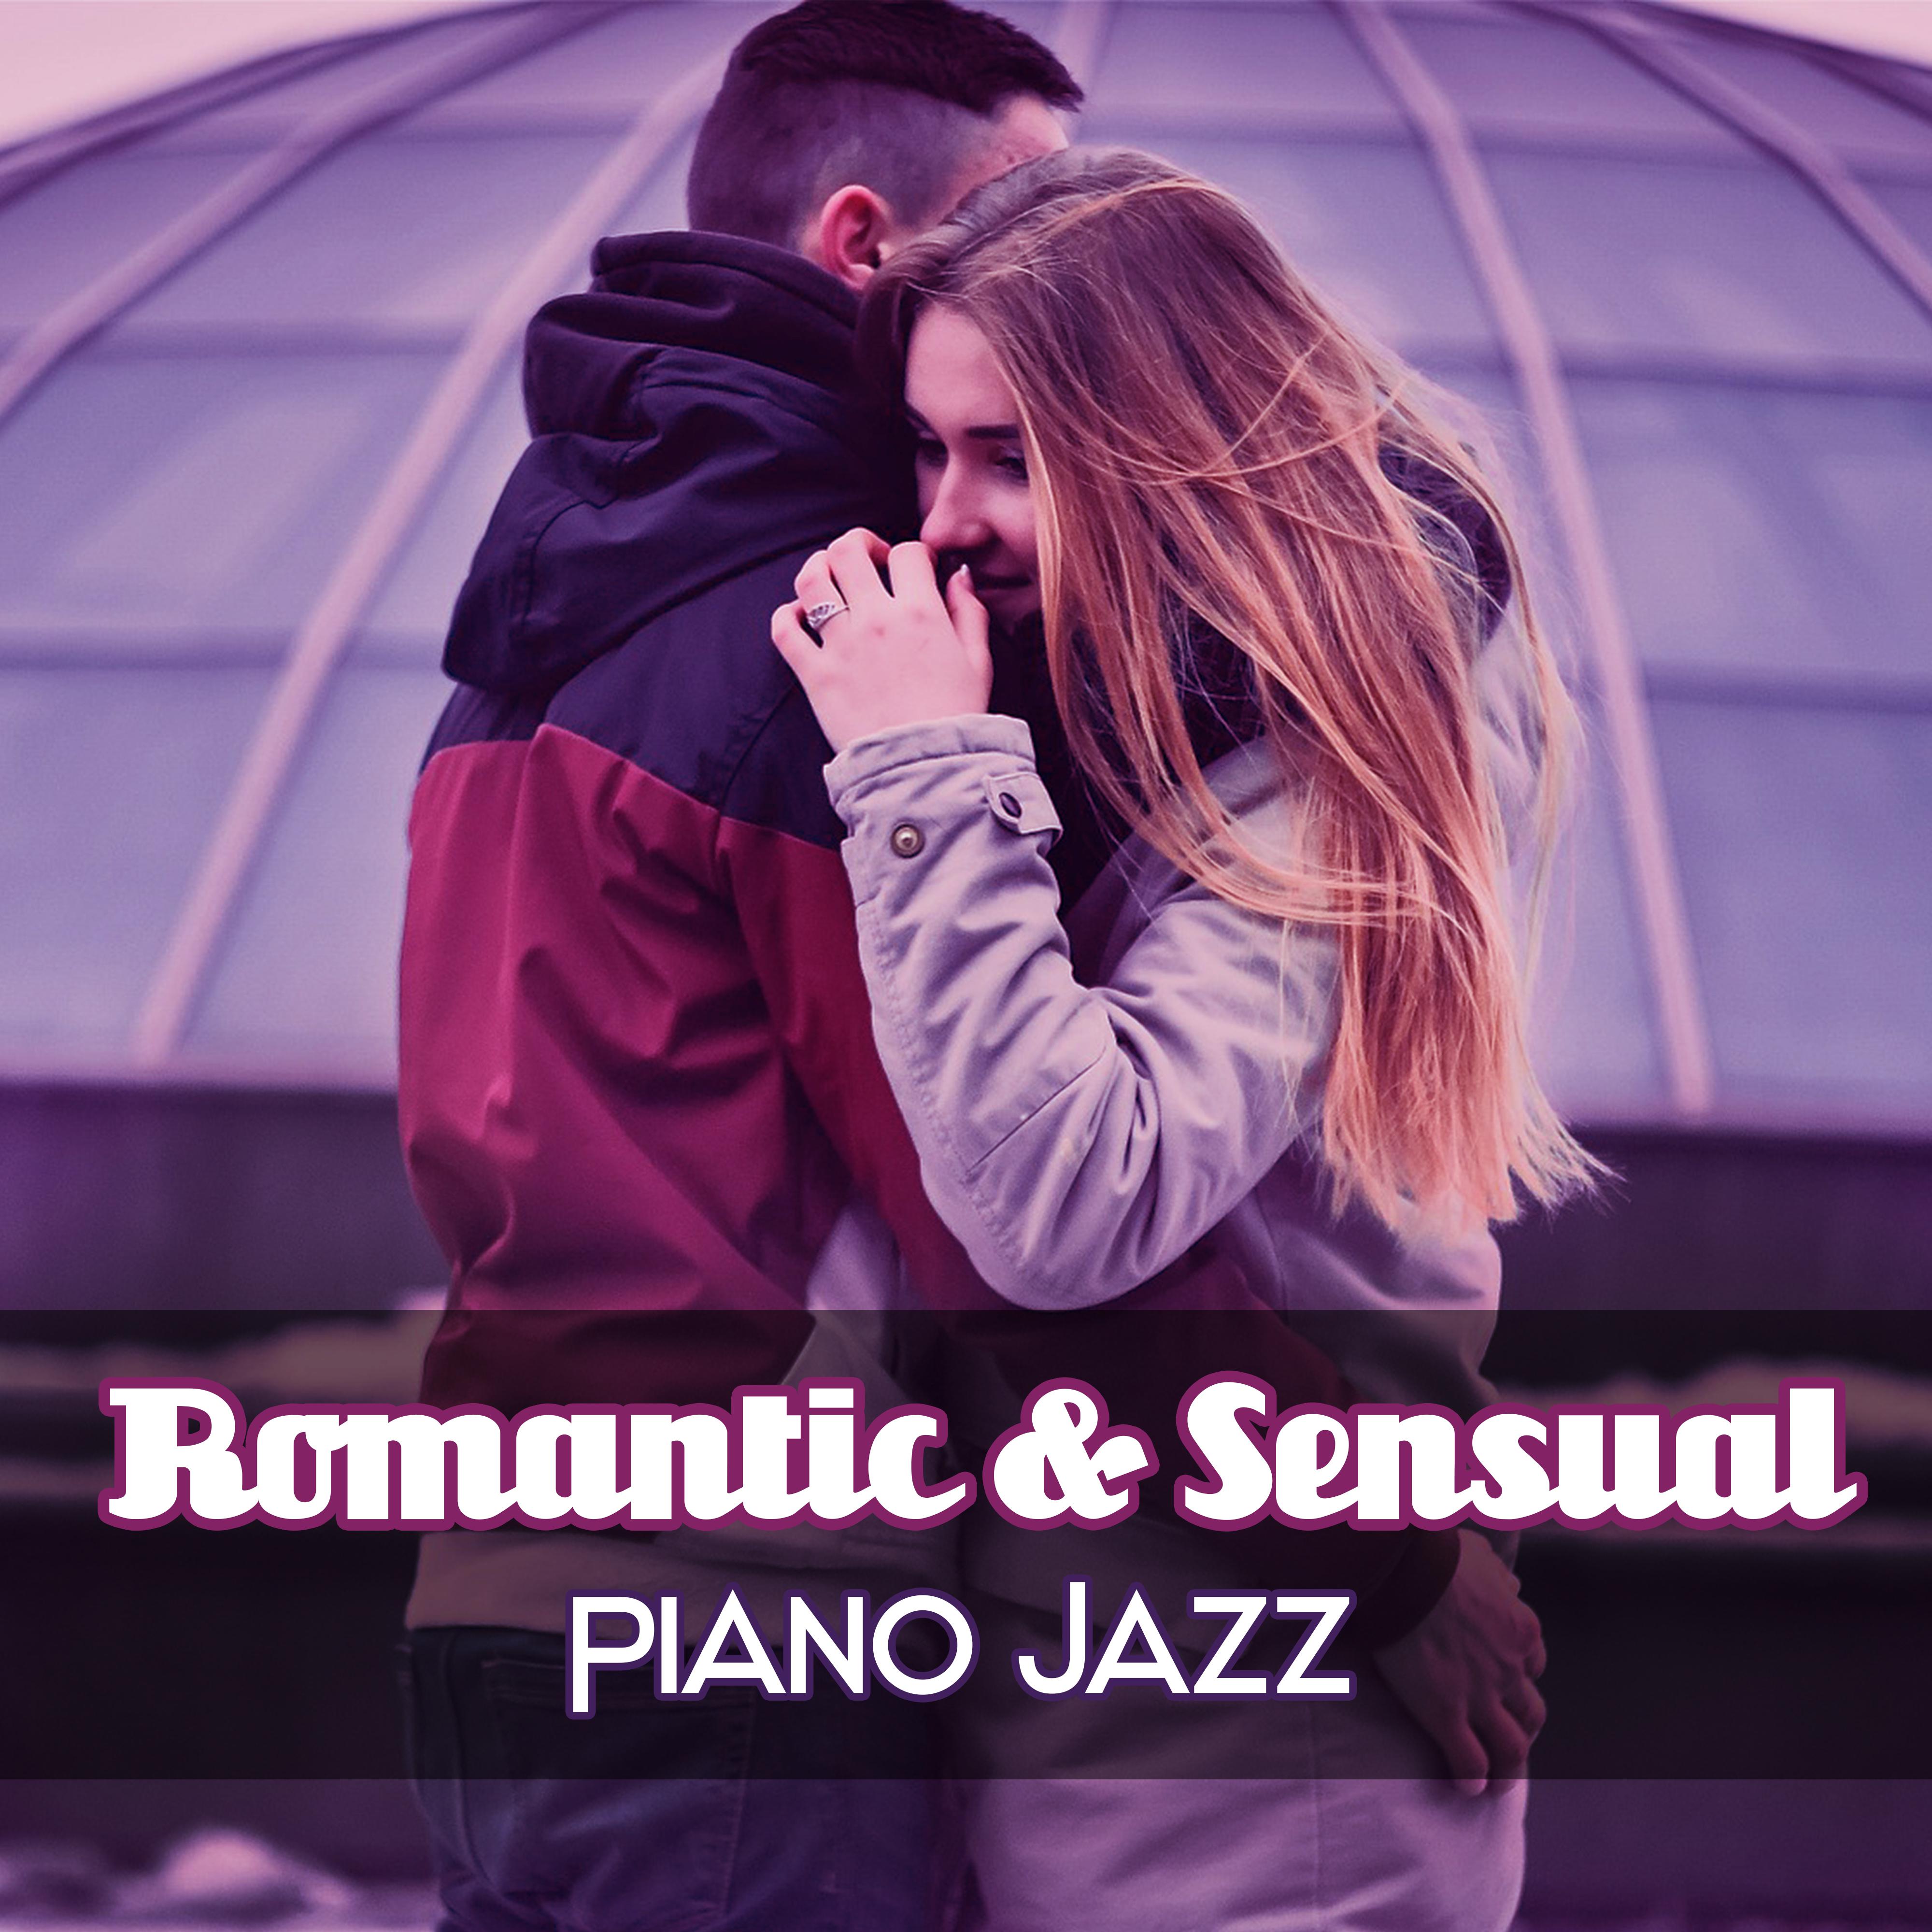 Romantic & Sensual Piano Jazz – Soothing Piano Jazz, Restaurant Background Music, Love Jazz Music